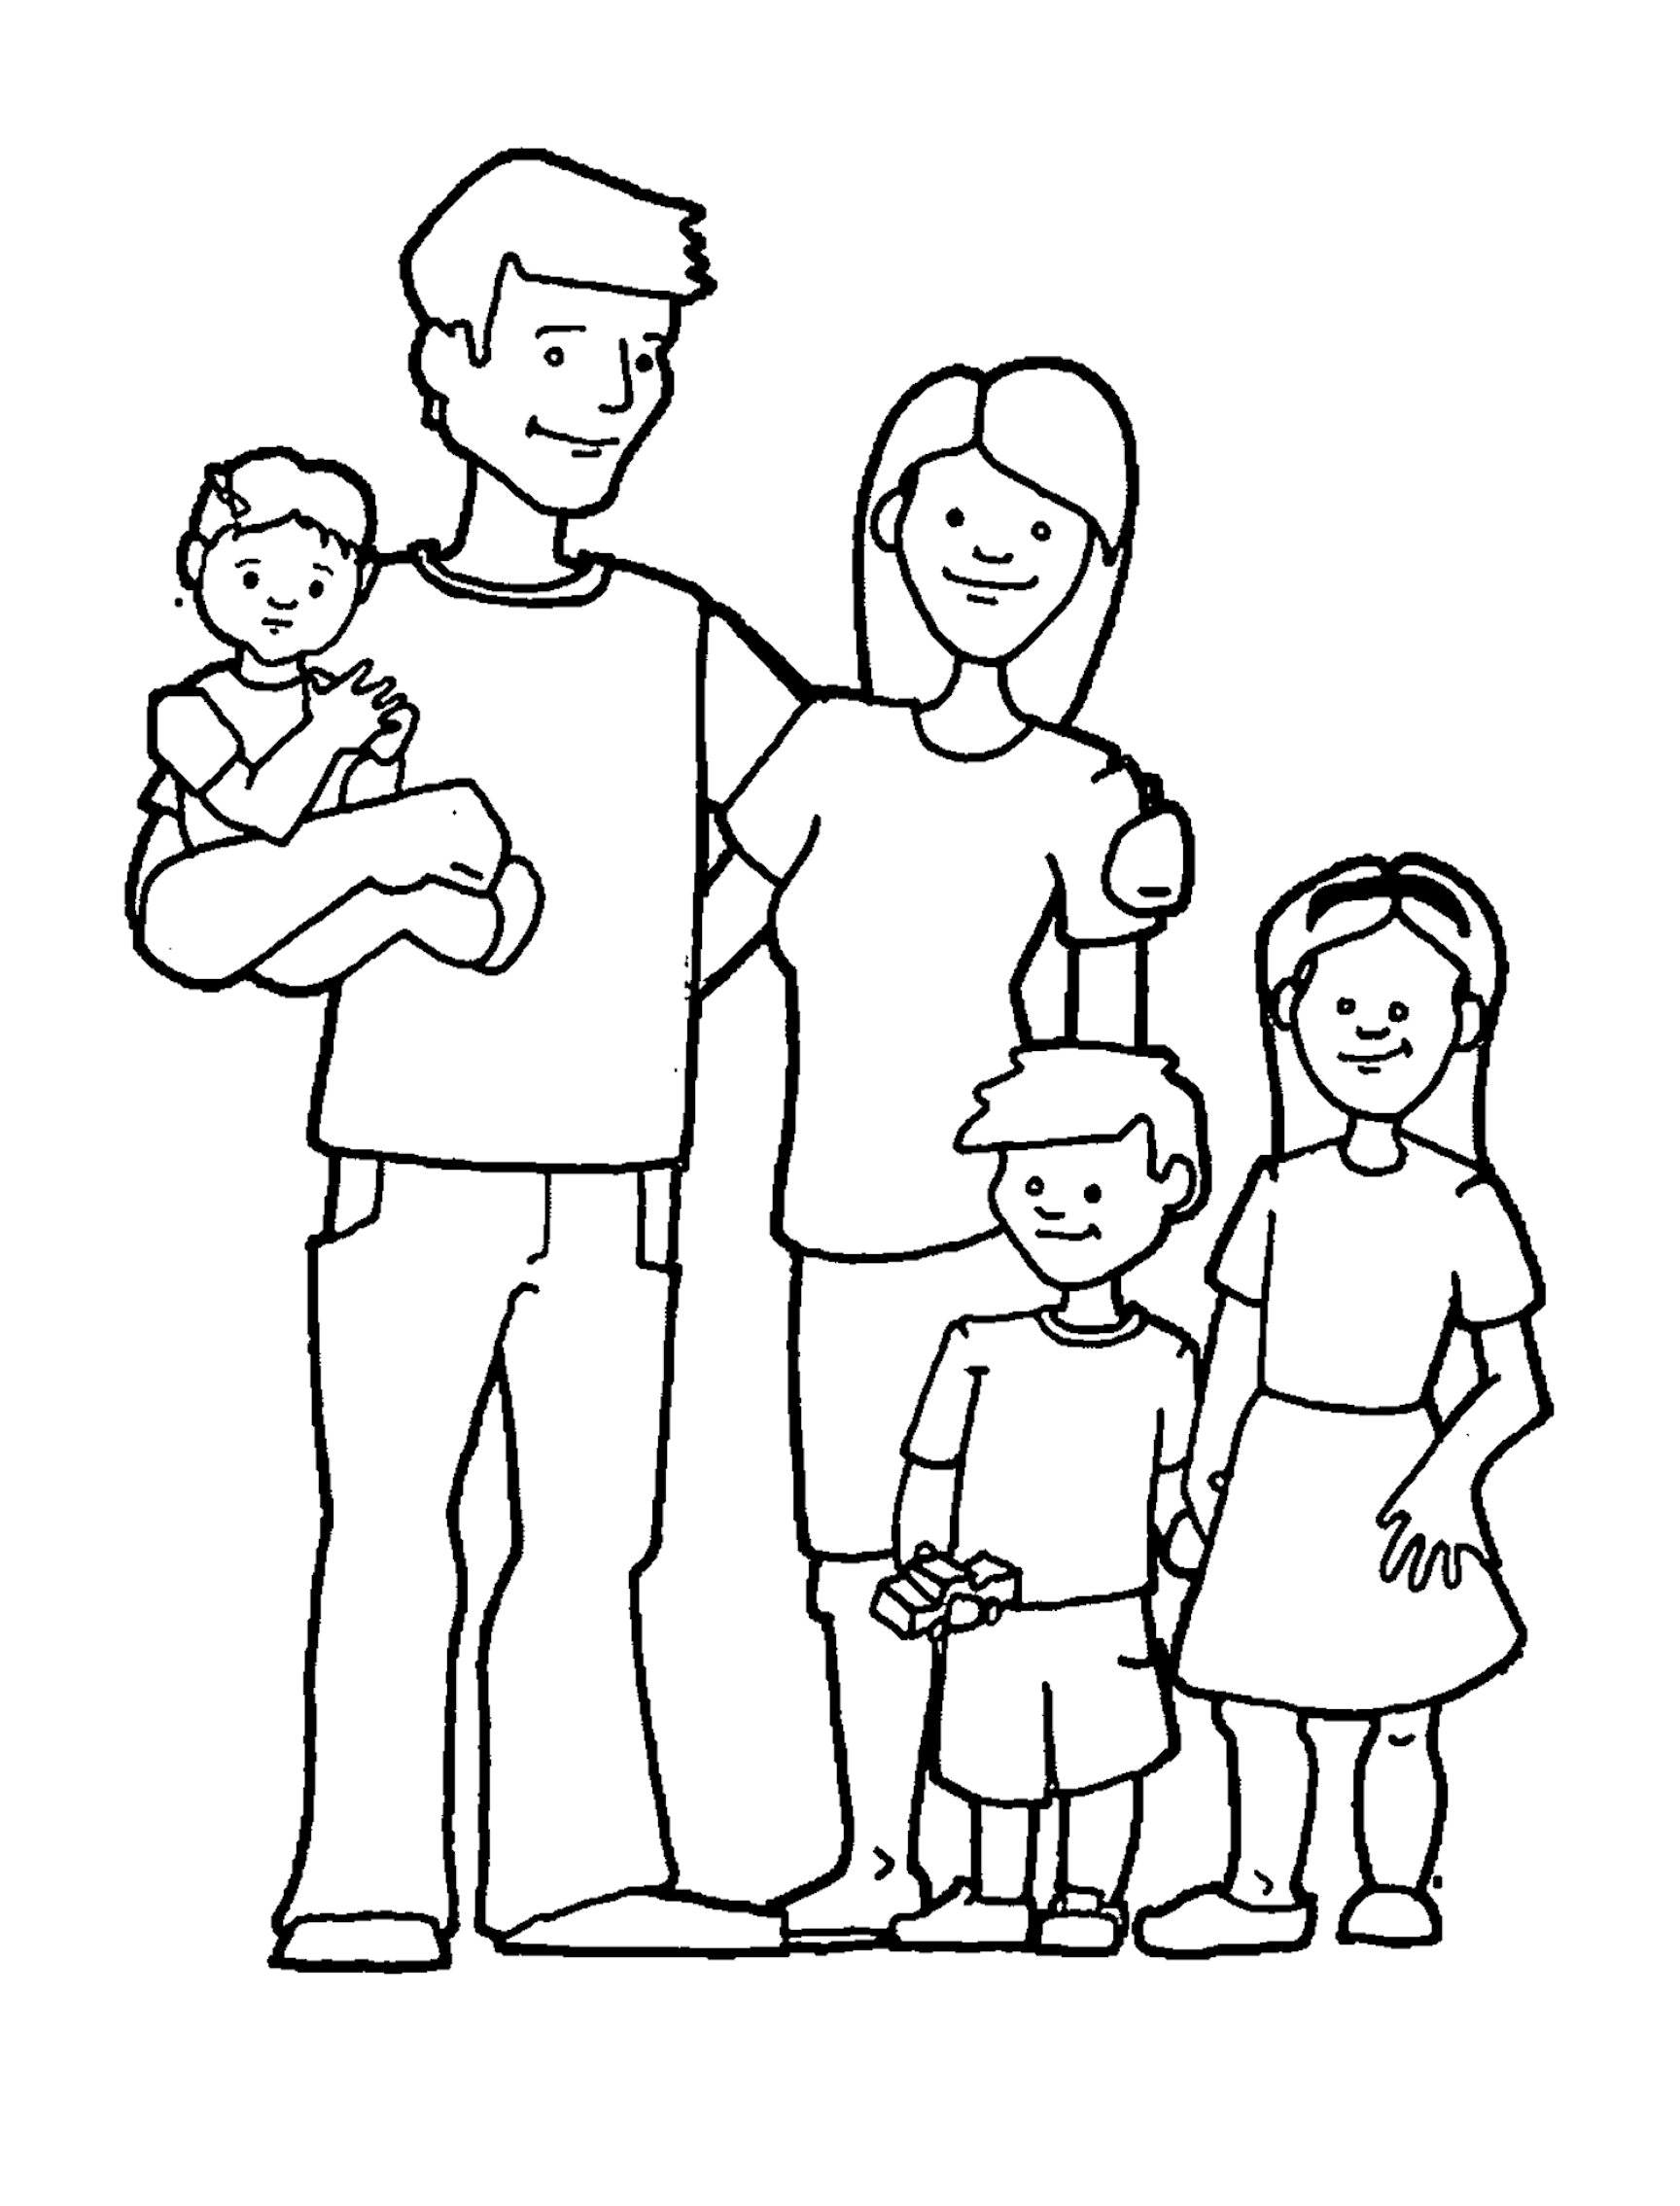 Скопировать семью. Раскраска семья. Семья раскраска для детей. Раскраска "моя семья". Семья рисунок.